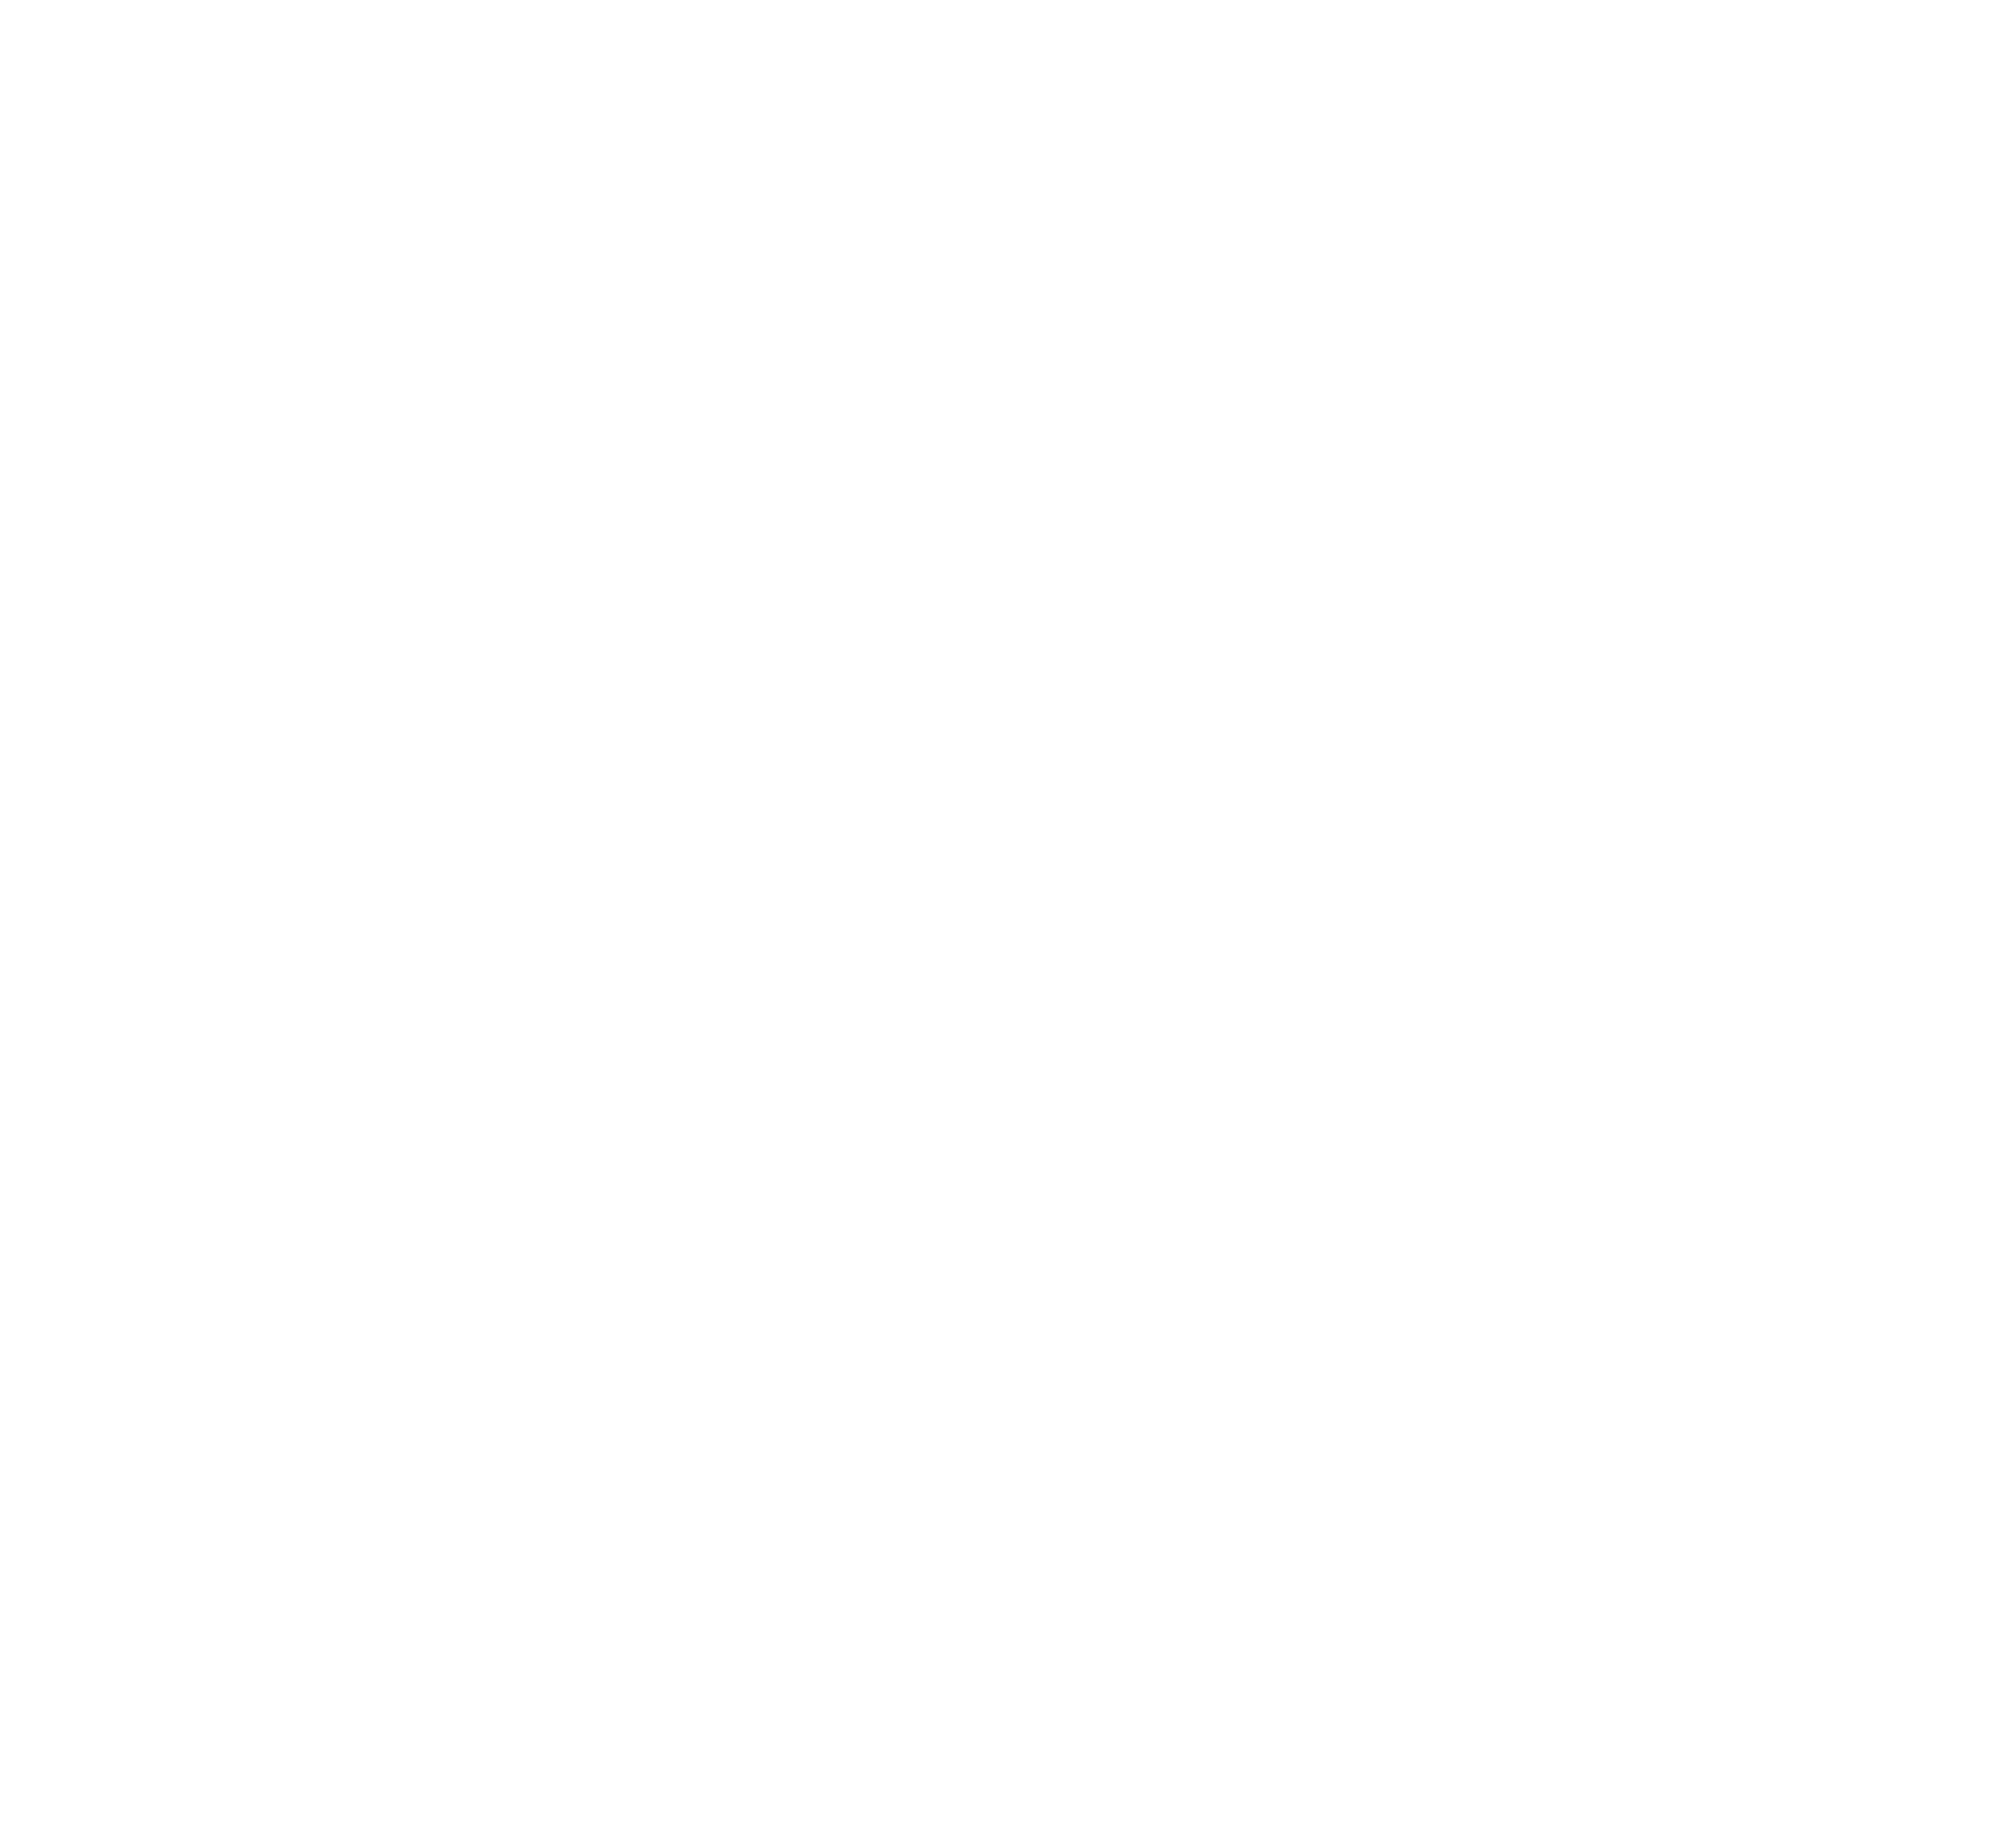 Logotyp för för CCS hudvård ®